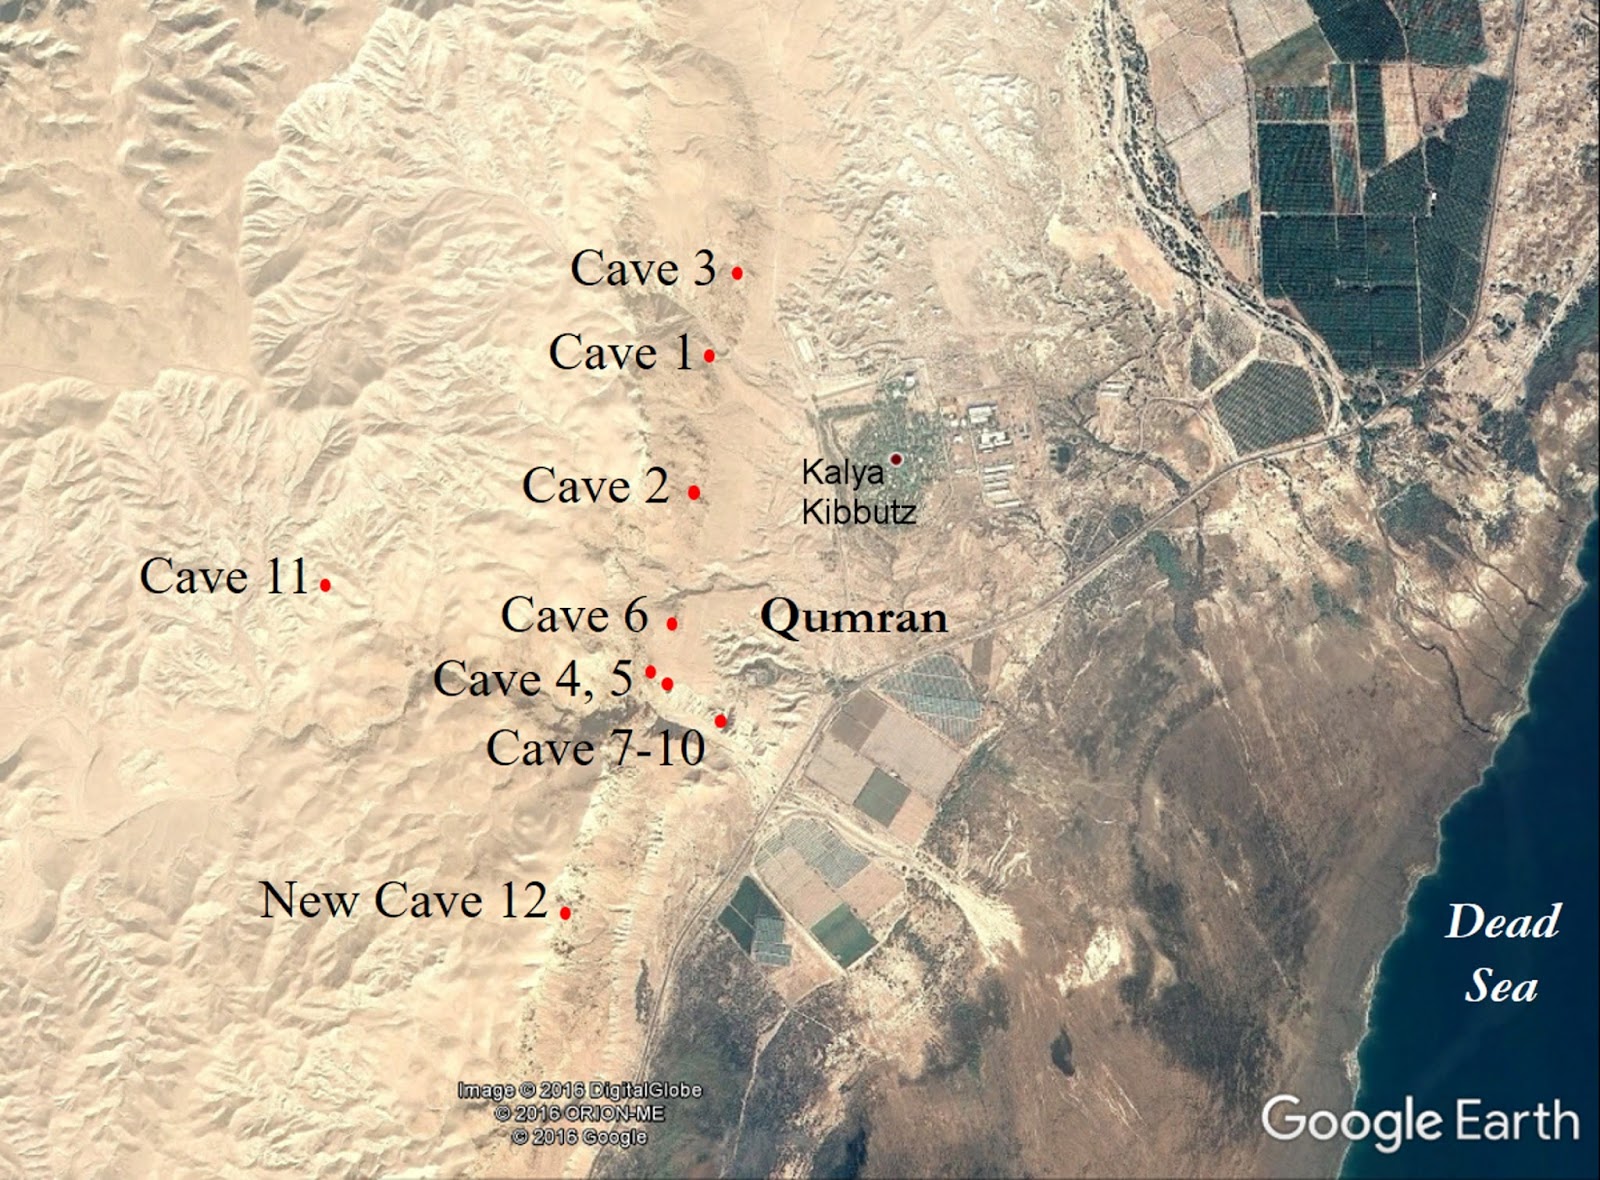 Deus Artefacta: The twelfth Dead Sea Scroll cave is confirmed and I was